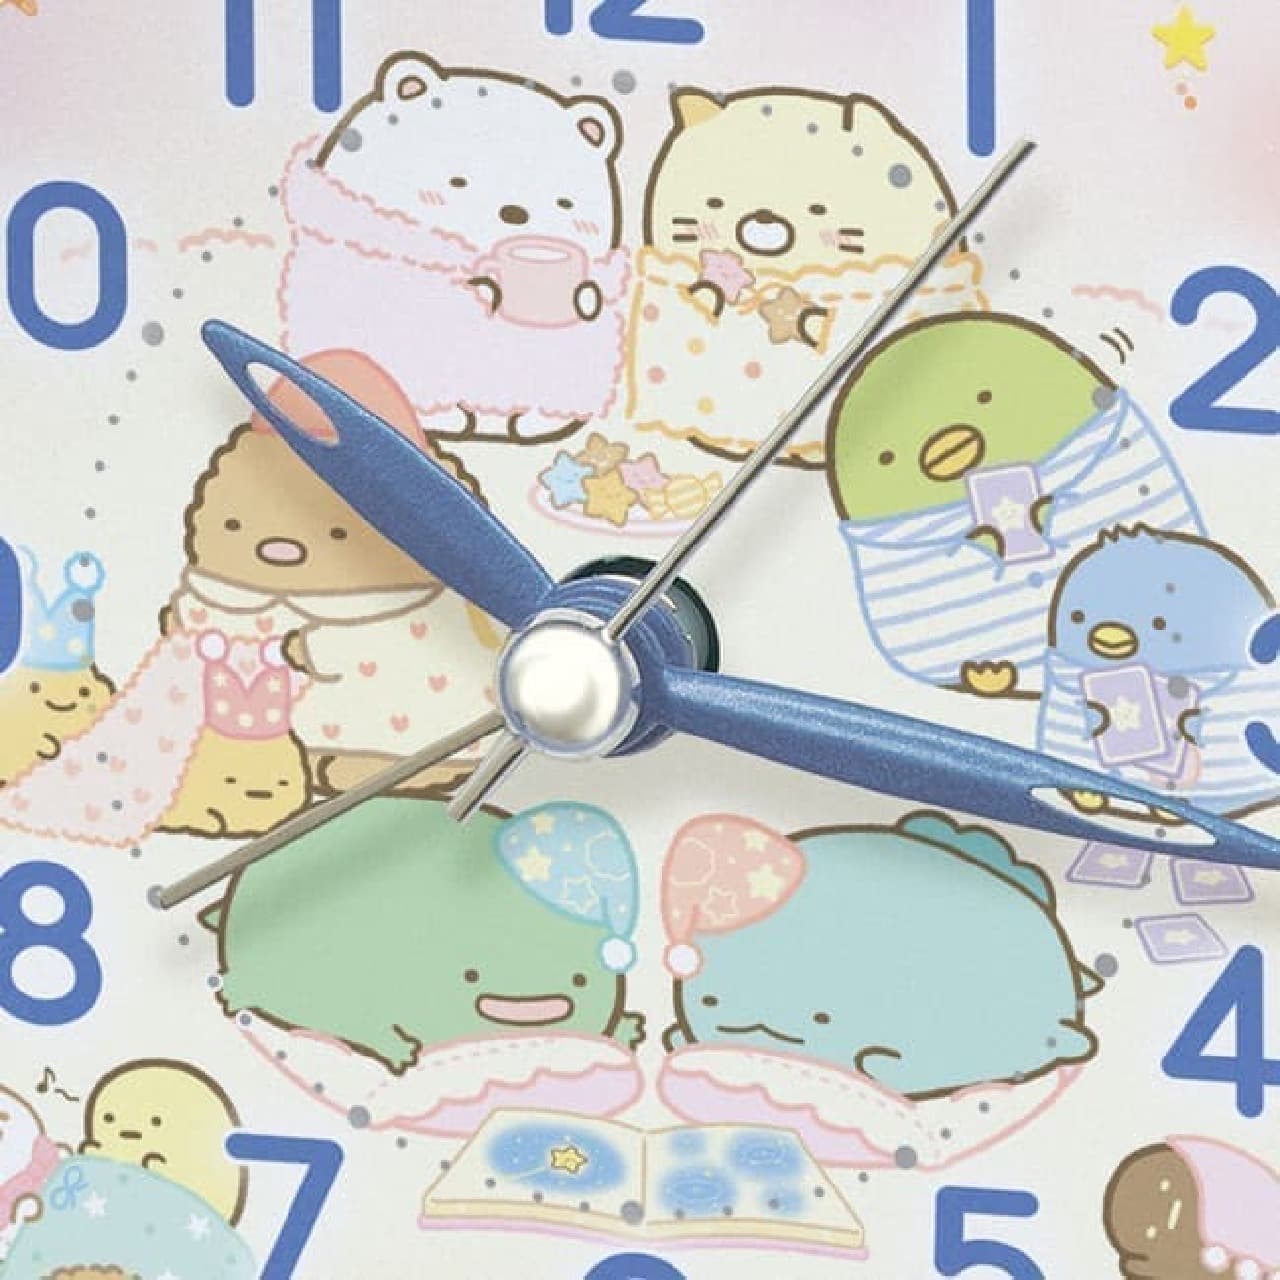 すみっコぐらしの目ざまし時計新作 -- すみっコたちの可愛いおとまり会デザイン